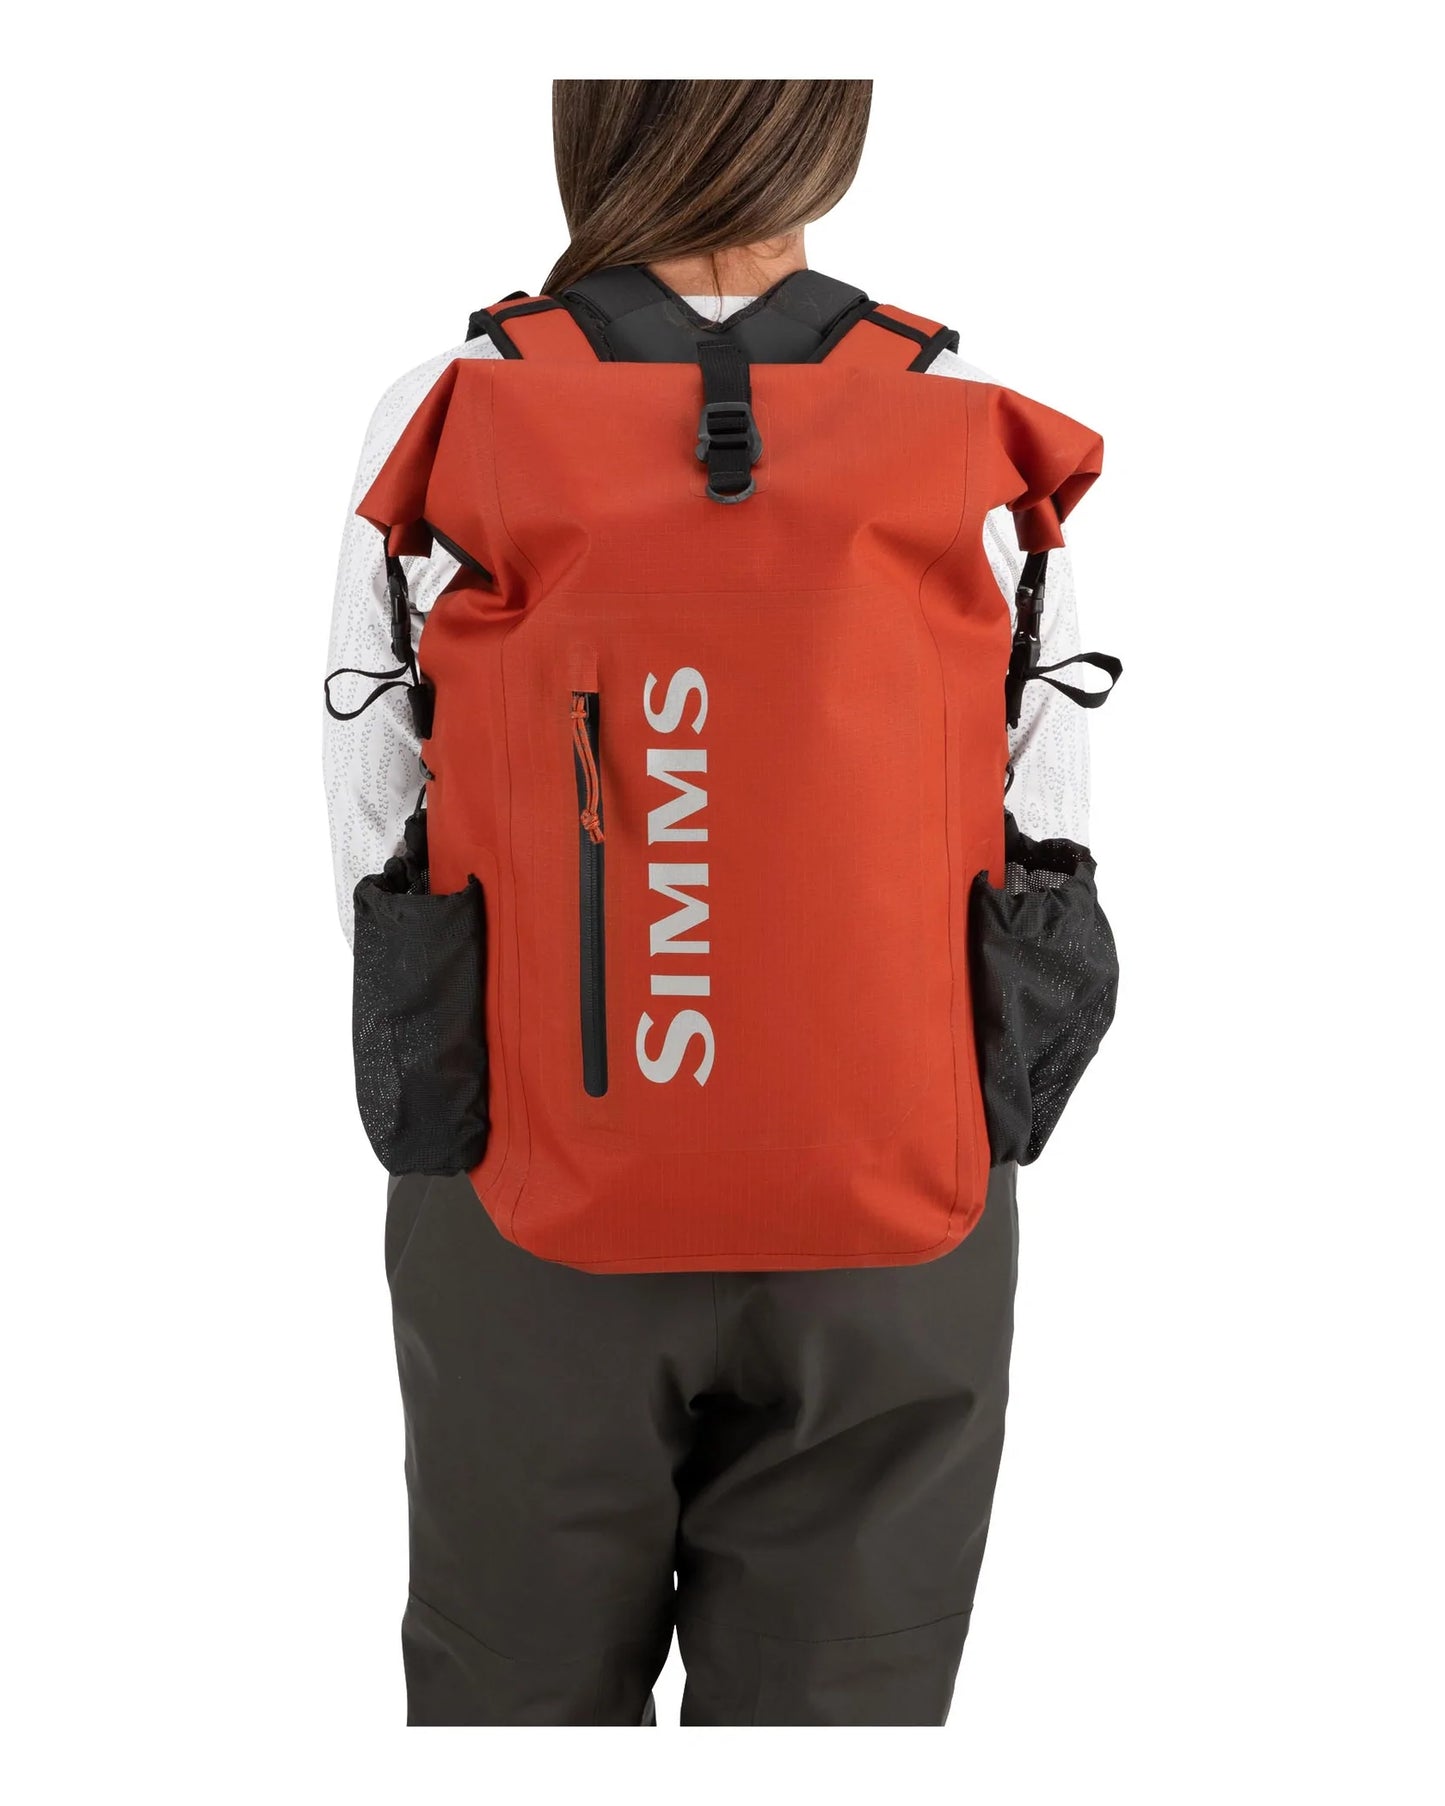 Simms Dry Creek Rolltop Backpack - Simms Orange - Sportinglife Turangi 